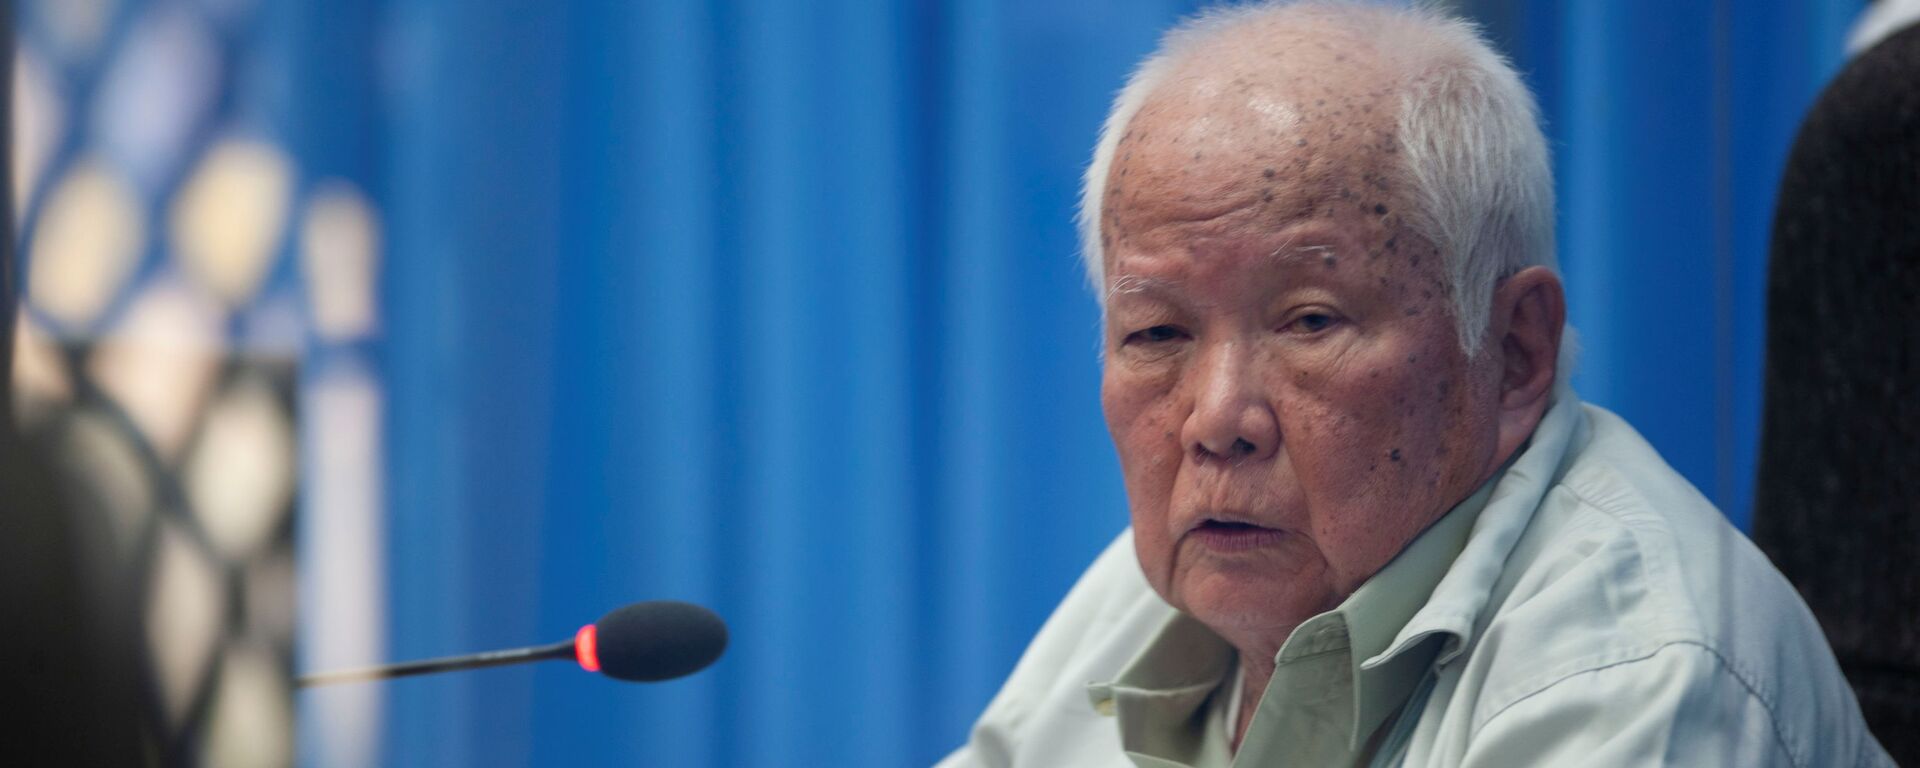 Cựu thủ lĩnh chế độ Khmer Đỏ Khieu Samphan tại phiên tòa - Sputnik Việt Nam, 1920, 19.08.2021